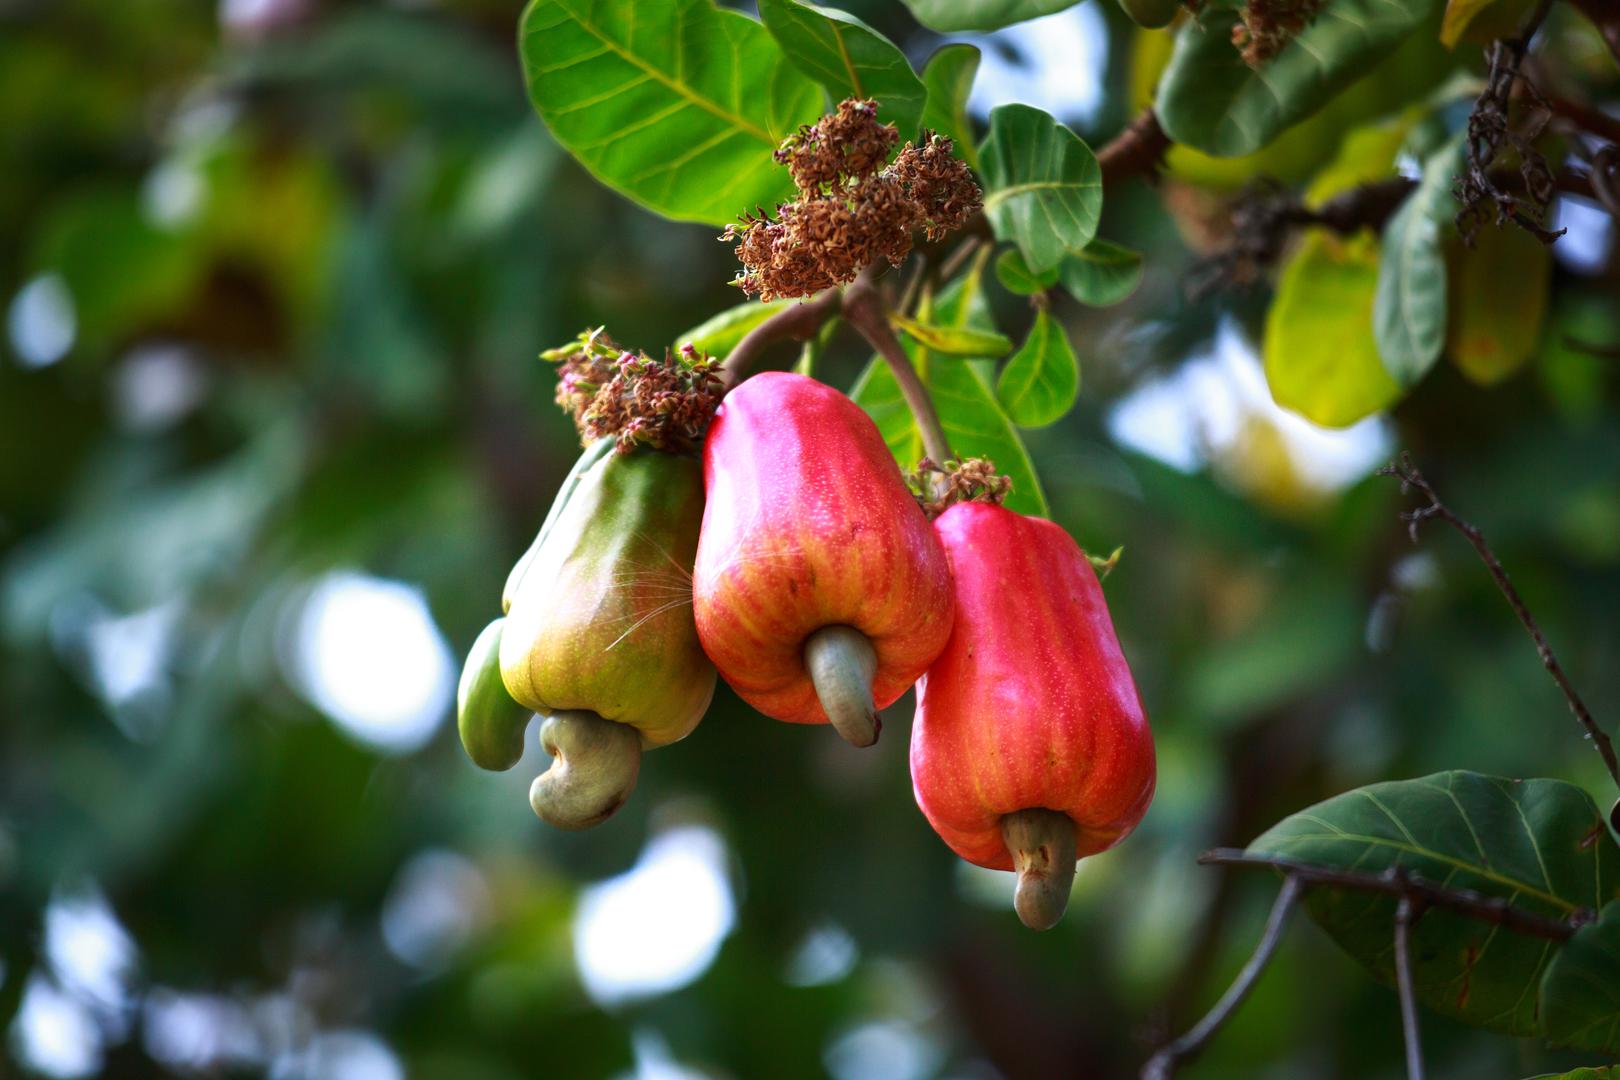 Ovo stvarno nismo zamišljali ovako! Jedno drvo prvo rodi malene plodove koji nalikuju paprikama, ali zapravo ih nazivaju jabukama. Iz njih se potom rodi još jedan plod - indijski oraščić.